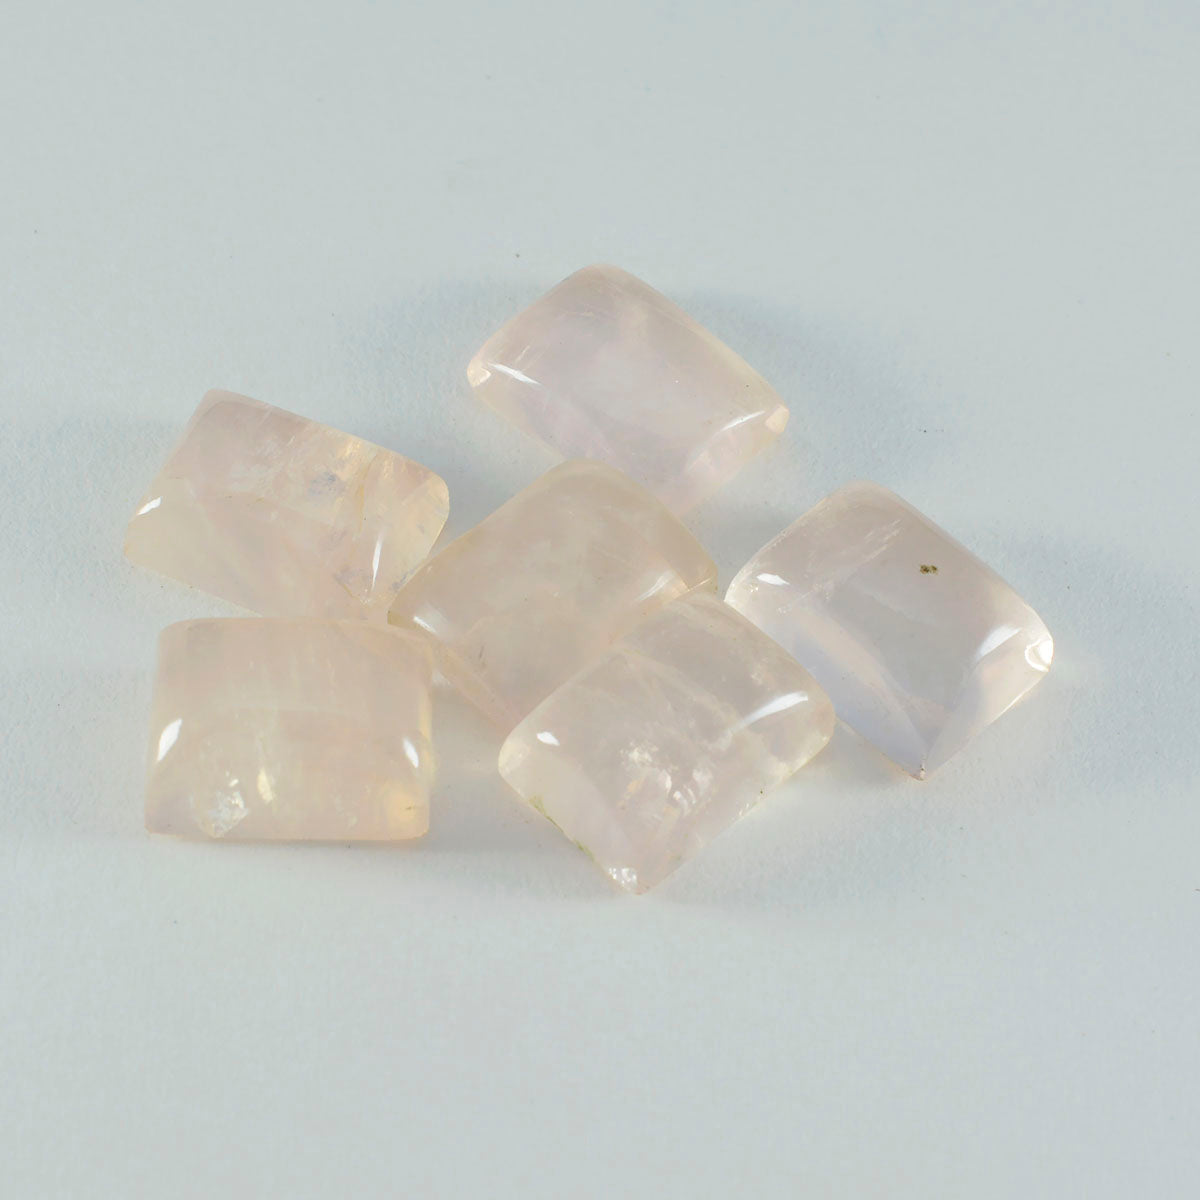 riyogems 1 шт. кабошон из розового кварца 12x16 мм восьмиугольной формы прекрасного качества, свободный драгоценный камень